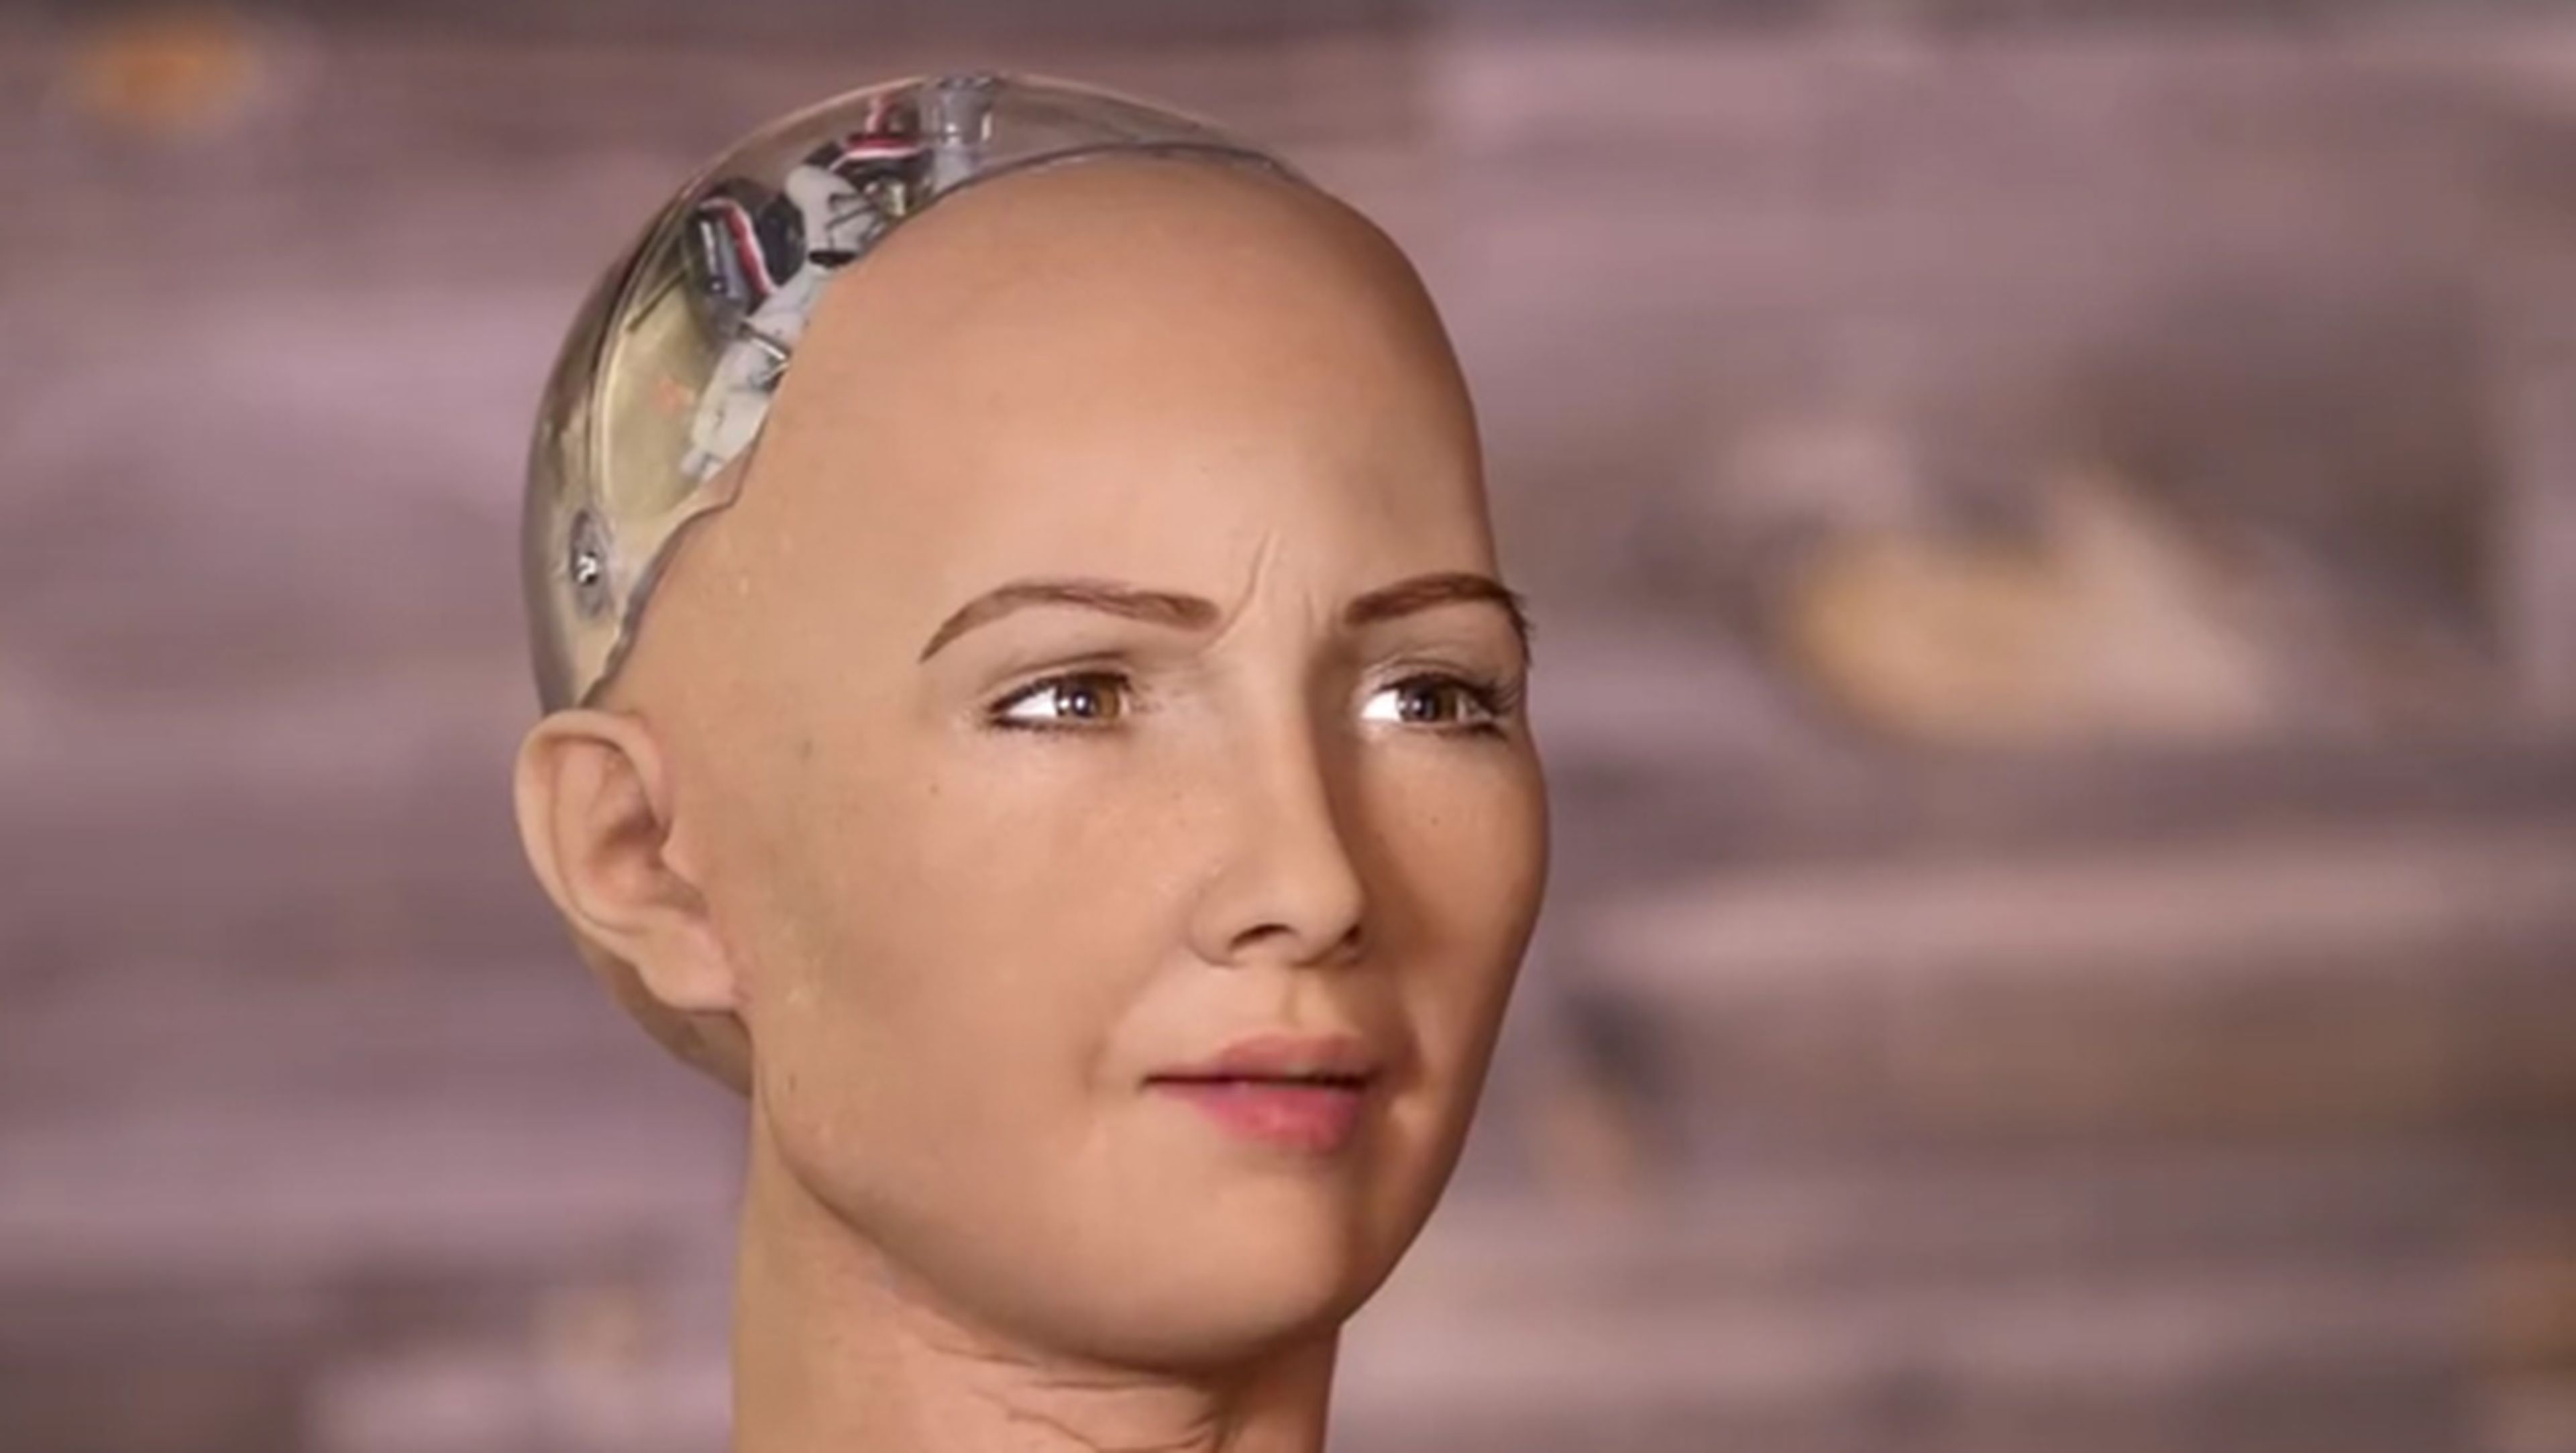 Robot humanoide de Hanson Robotics